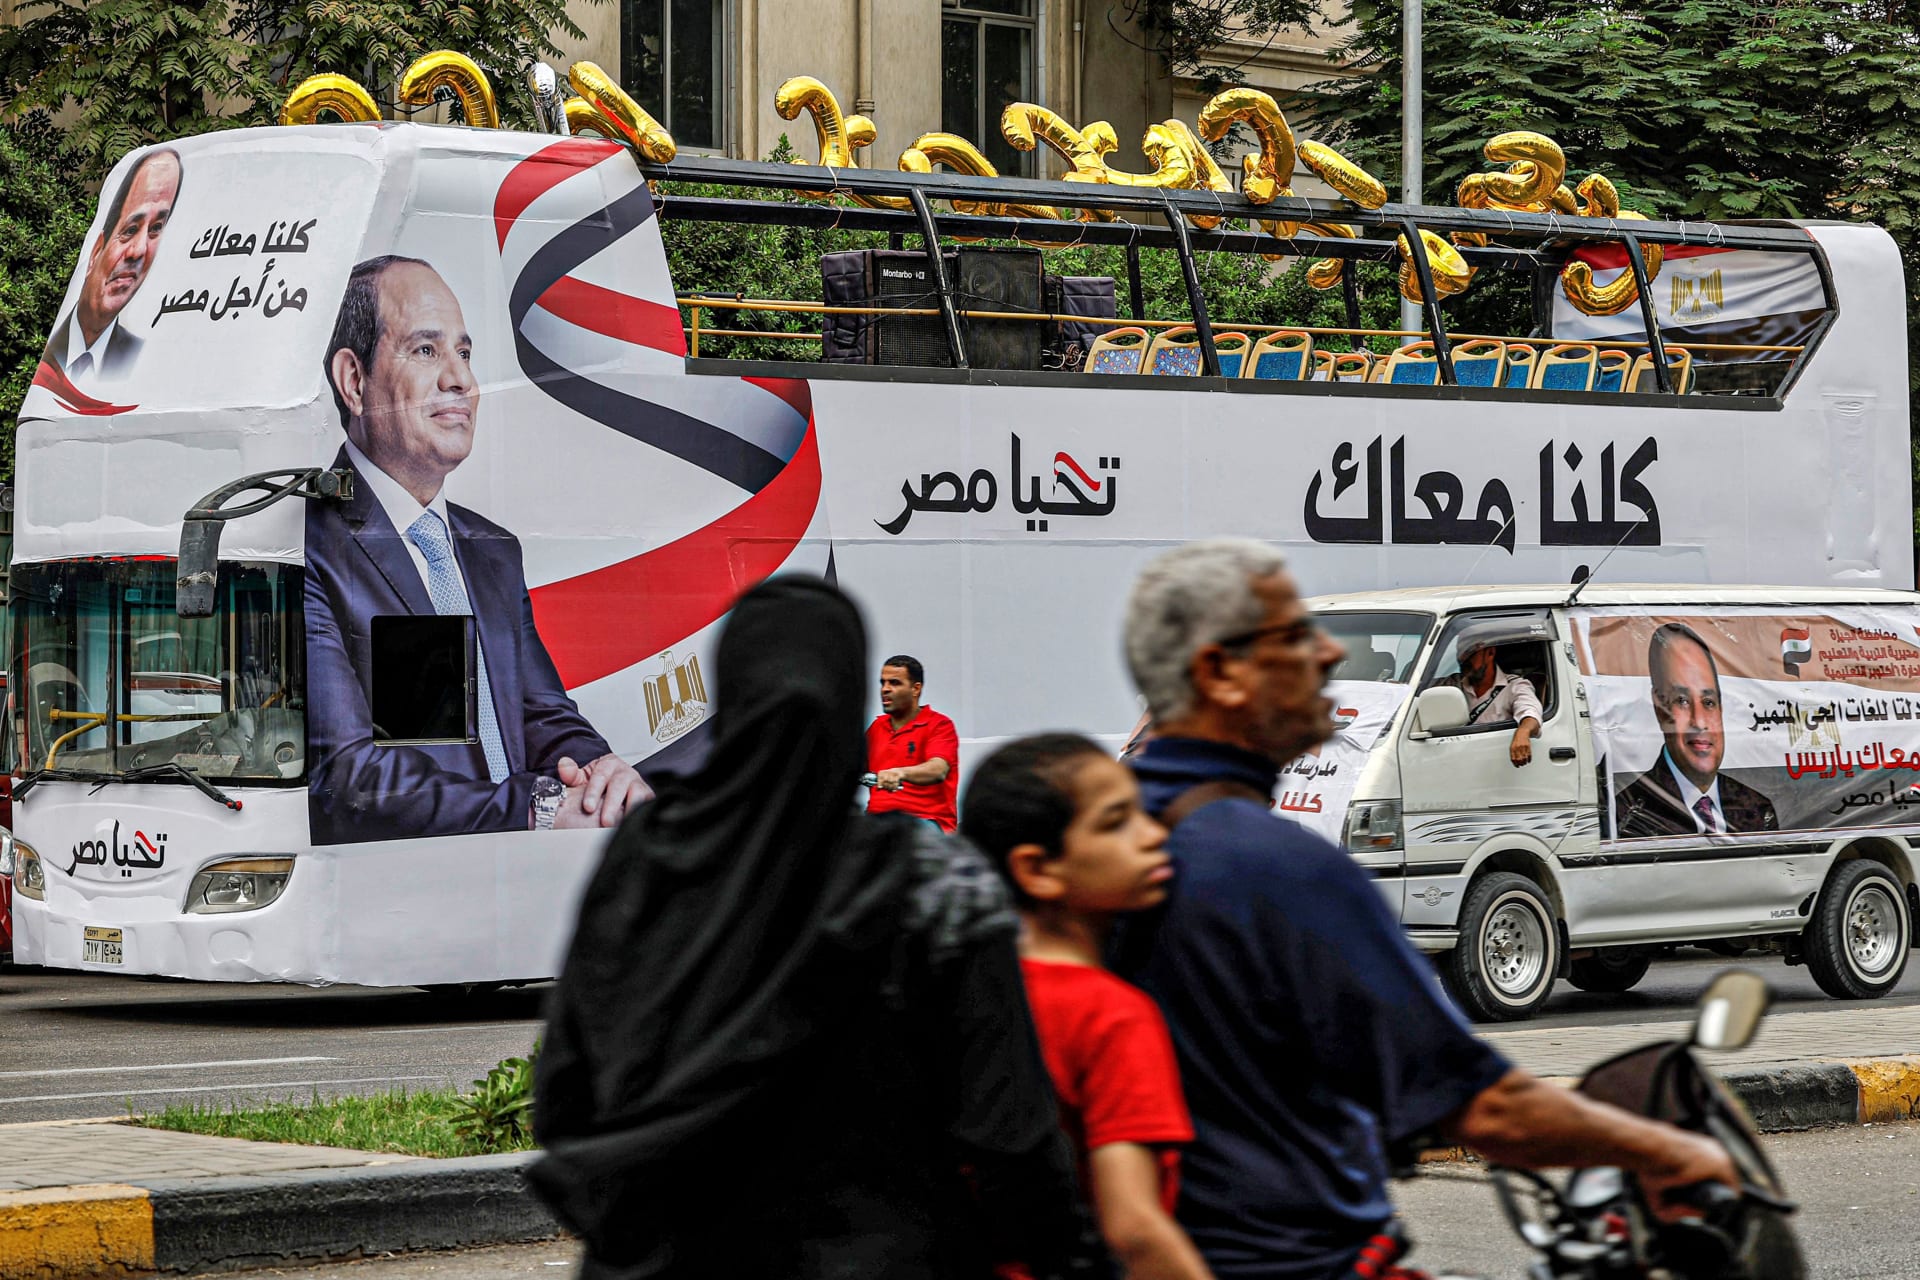 "يارب أكون أنا أولى بها".. الرئيس المصري يعلن رسميًا عزمه الترشح لولاية رئاسية جديدة